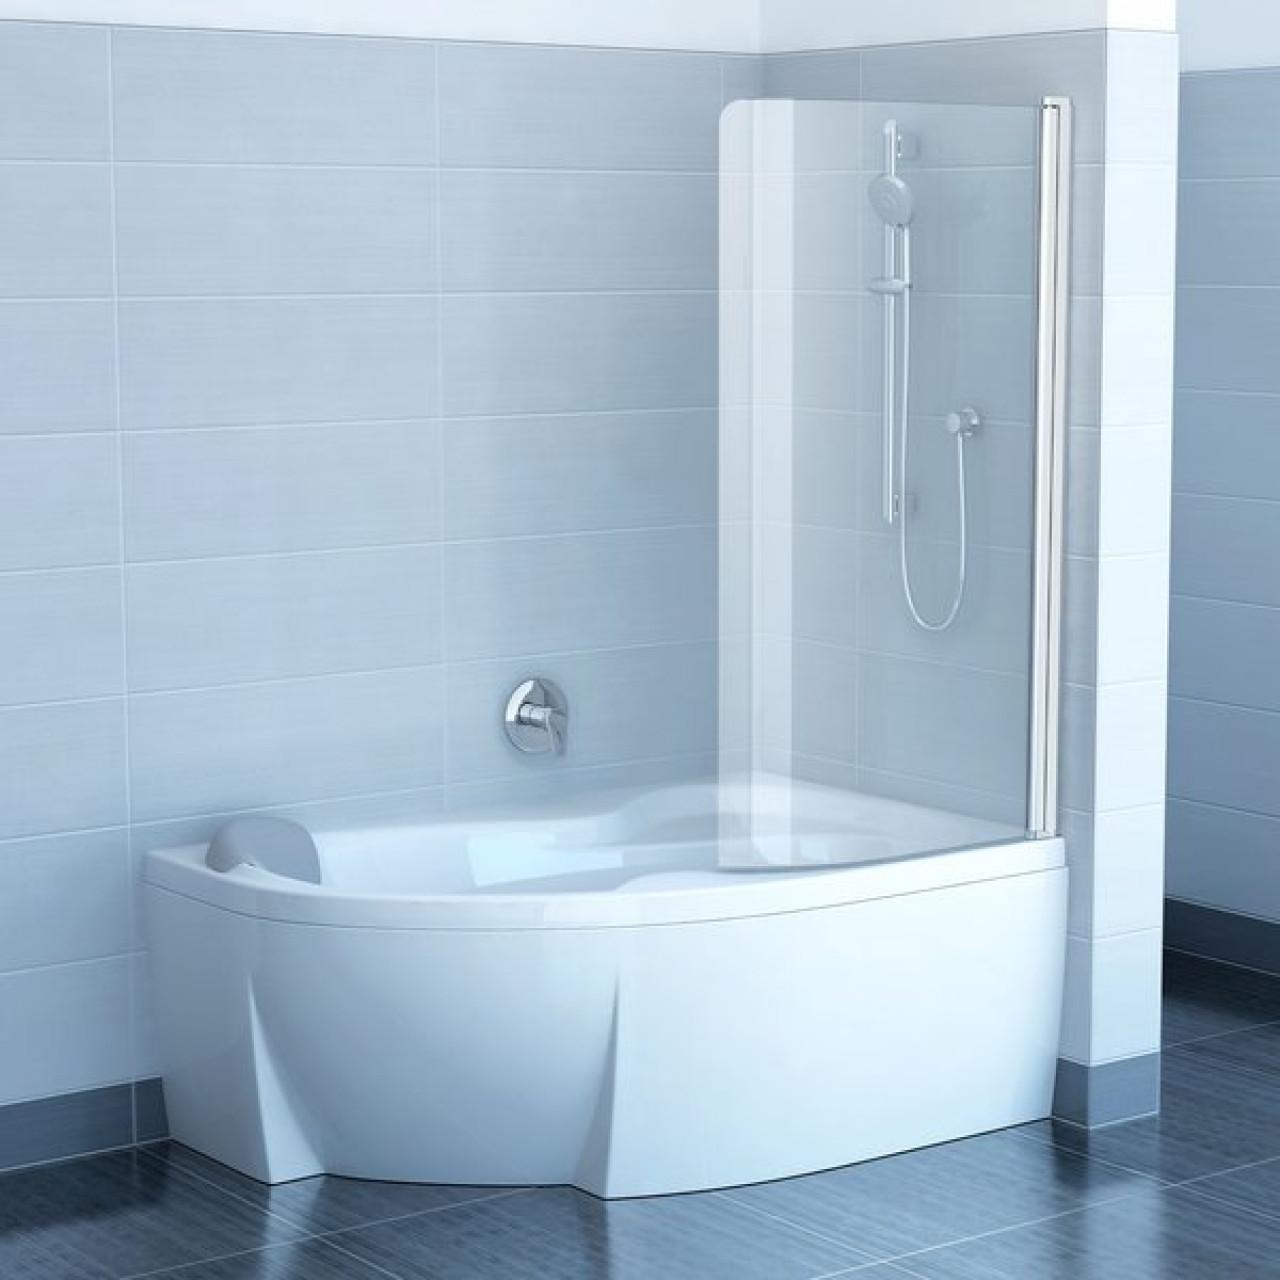 Шторка для ванны Ravak Chrome CVSK1 ROSA 160/170 R белая+транспарент 7QRS0100Y1 купить в Москве по цене от 62920р. в интернет-магазине mebel-v-vannu.ru